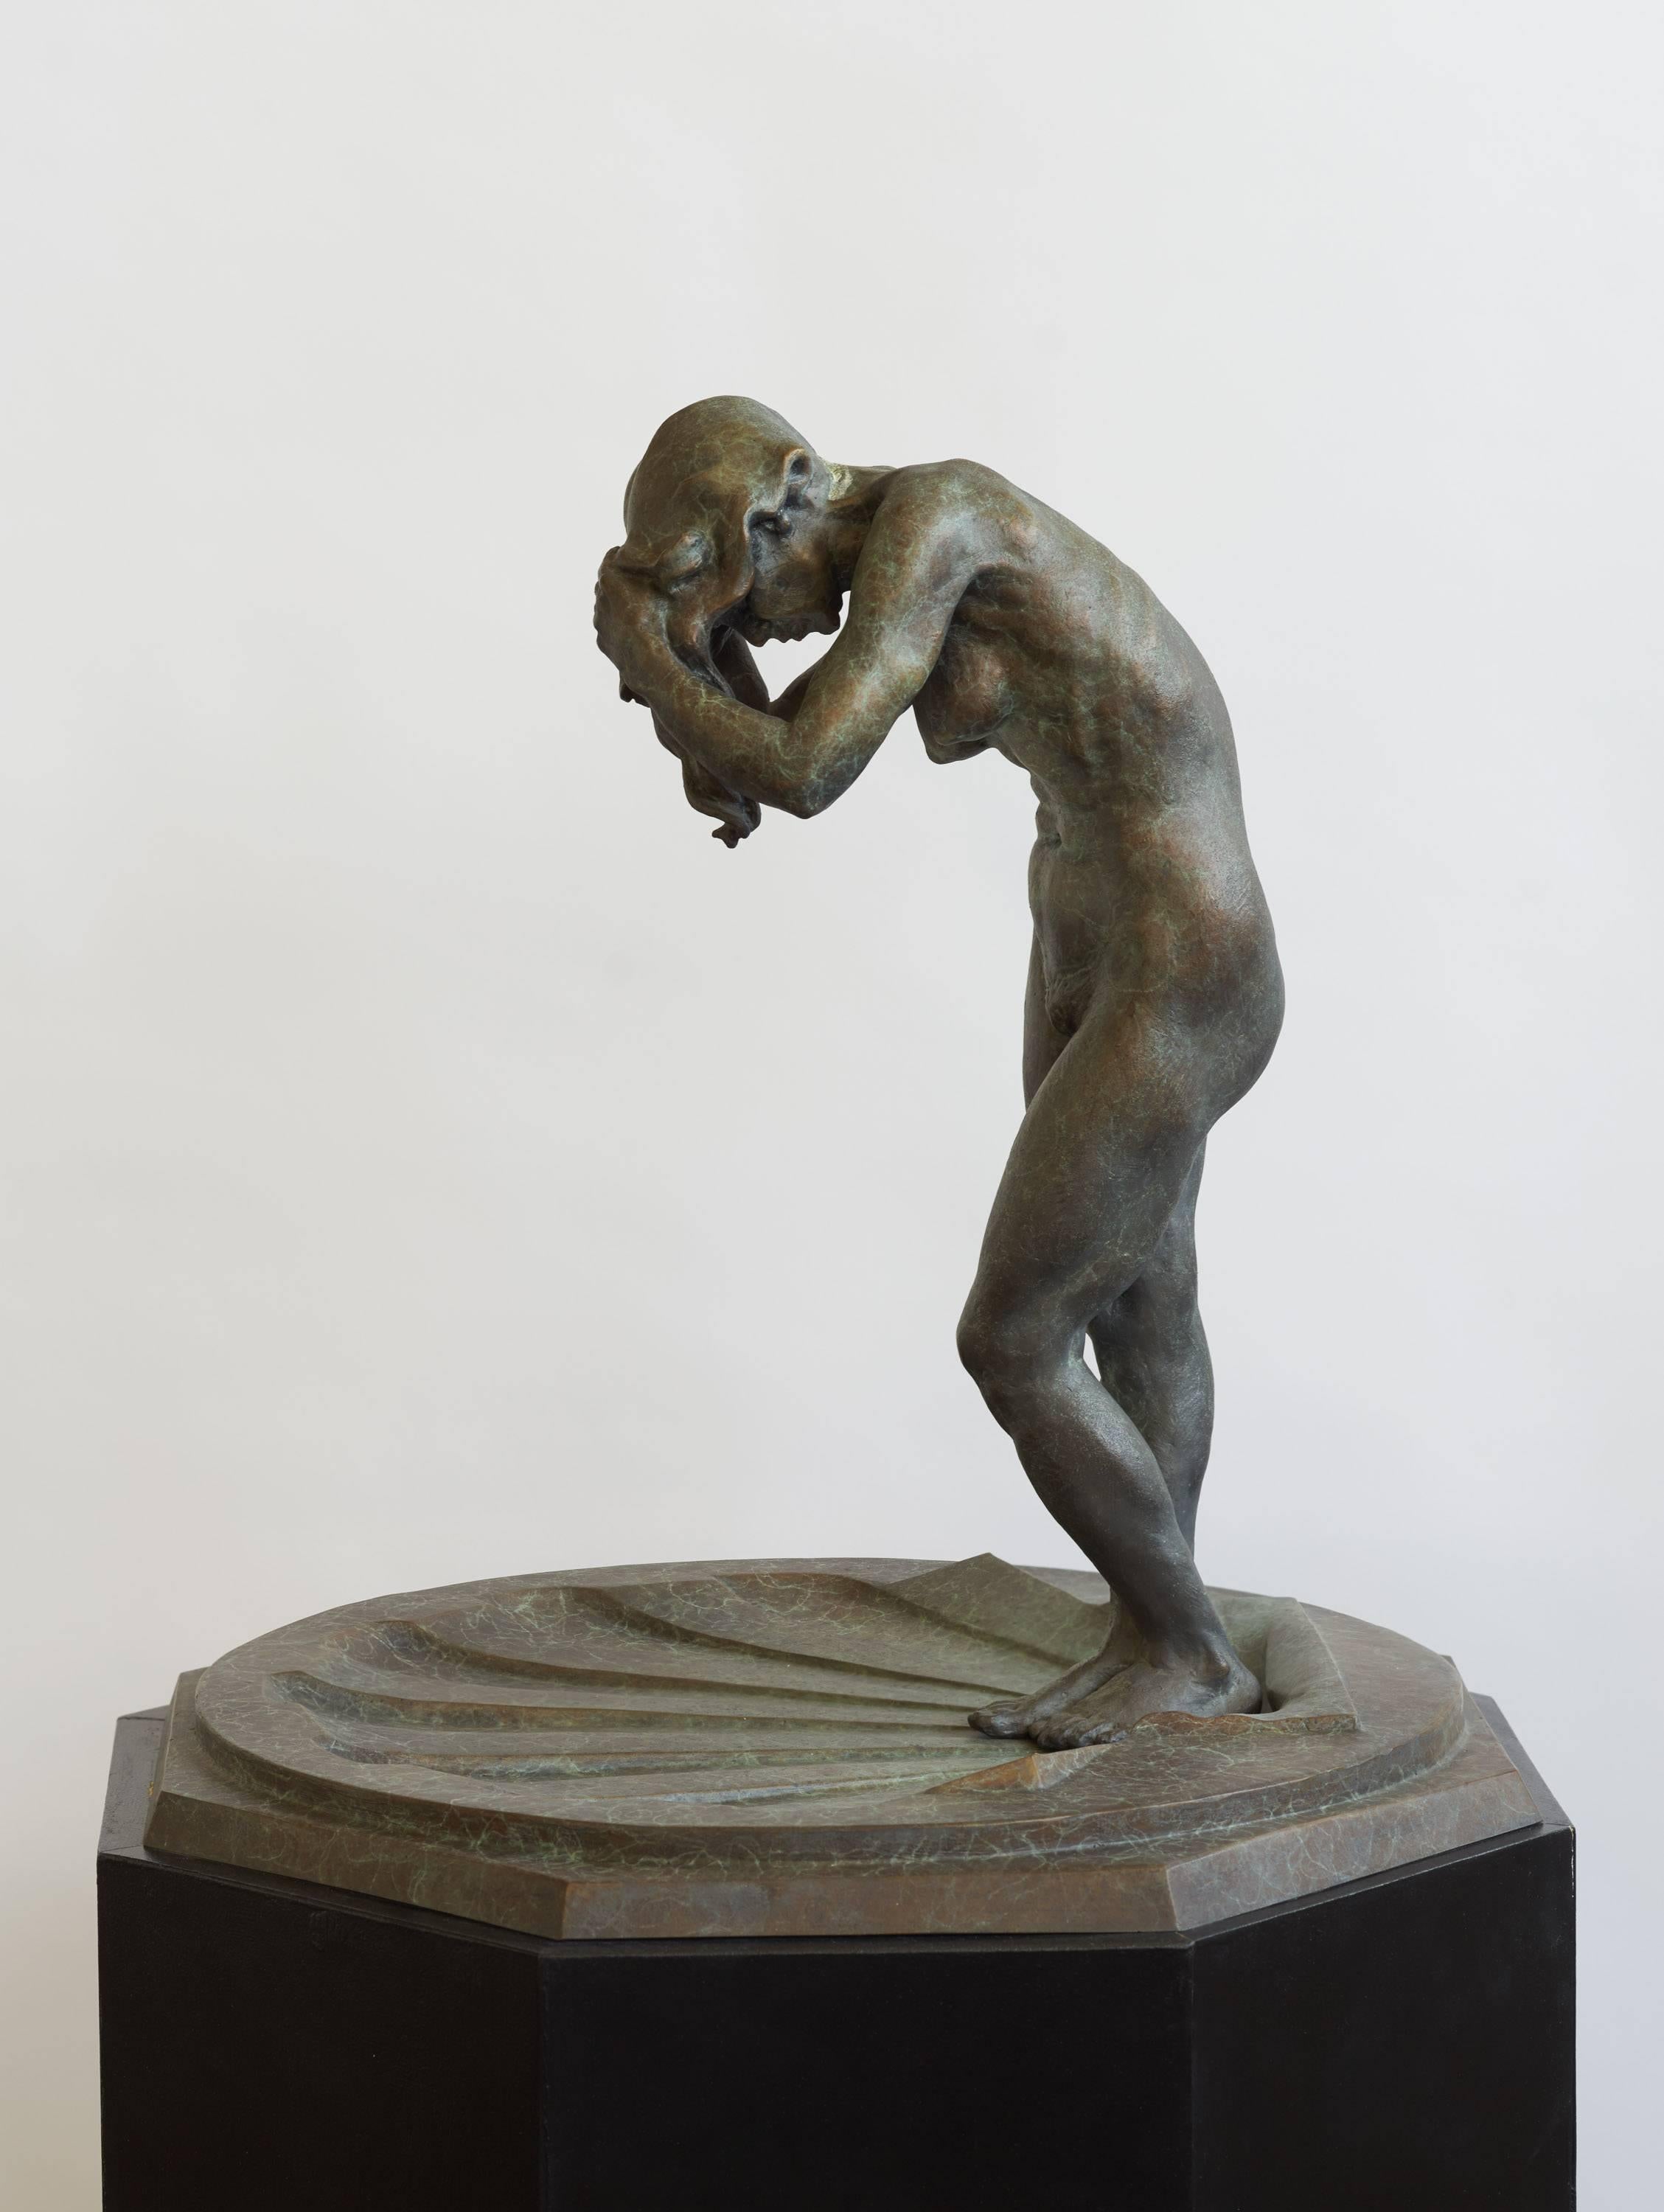 Raymond Kaskey Nude Sculpture - "Fountain" - Contemporary Bronze Figurative Sculpture - Bernini